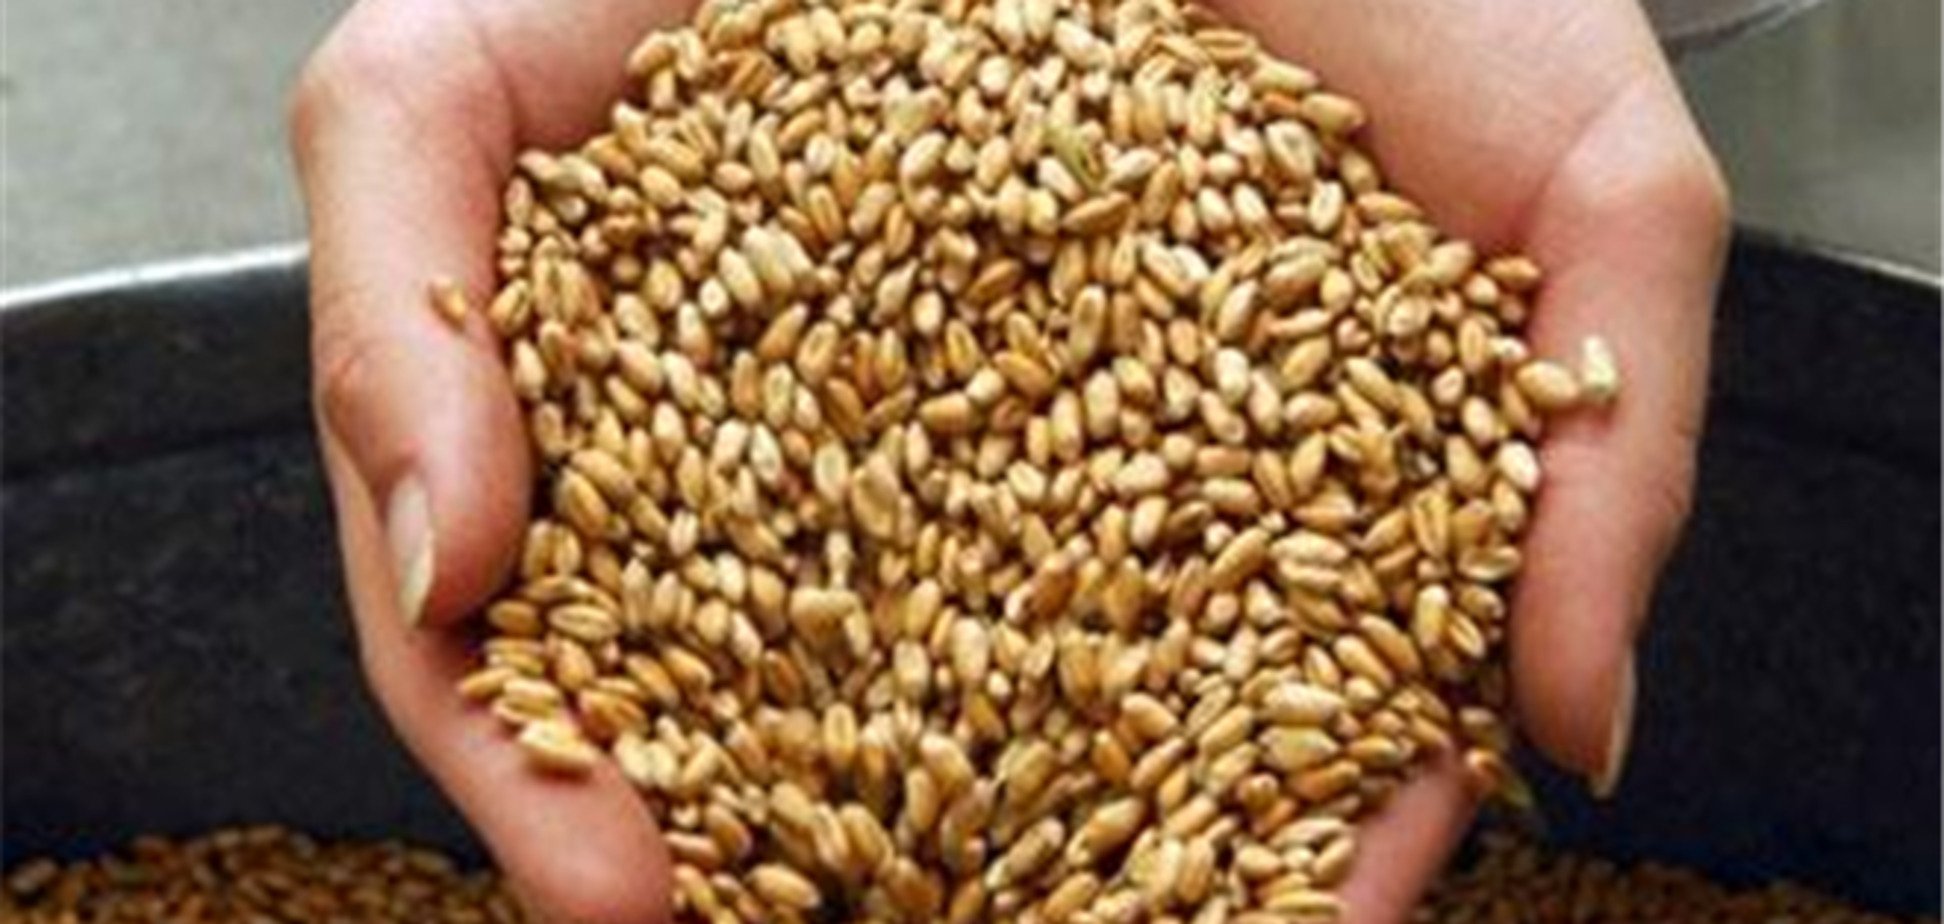 Мировые цены на зерно сильно обвалились